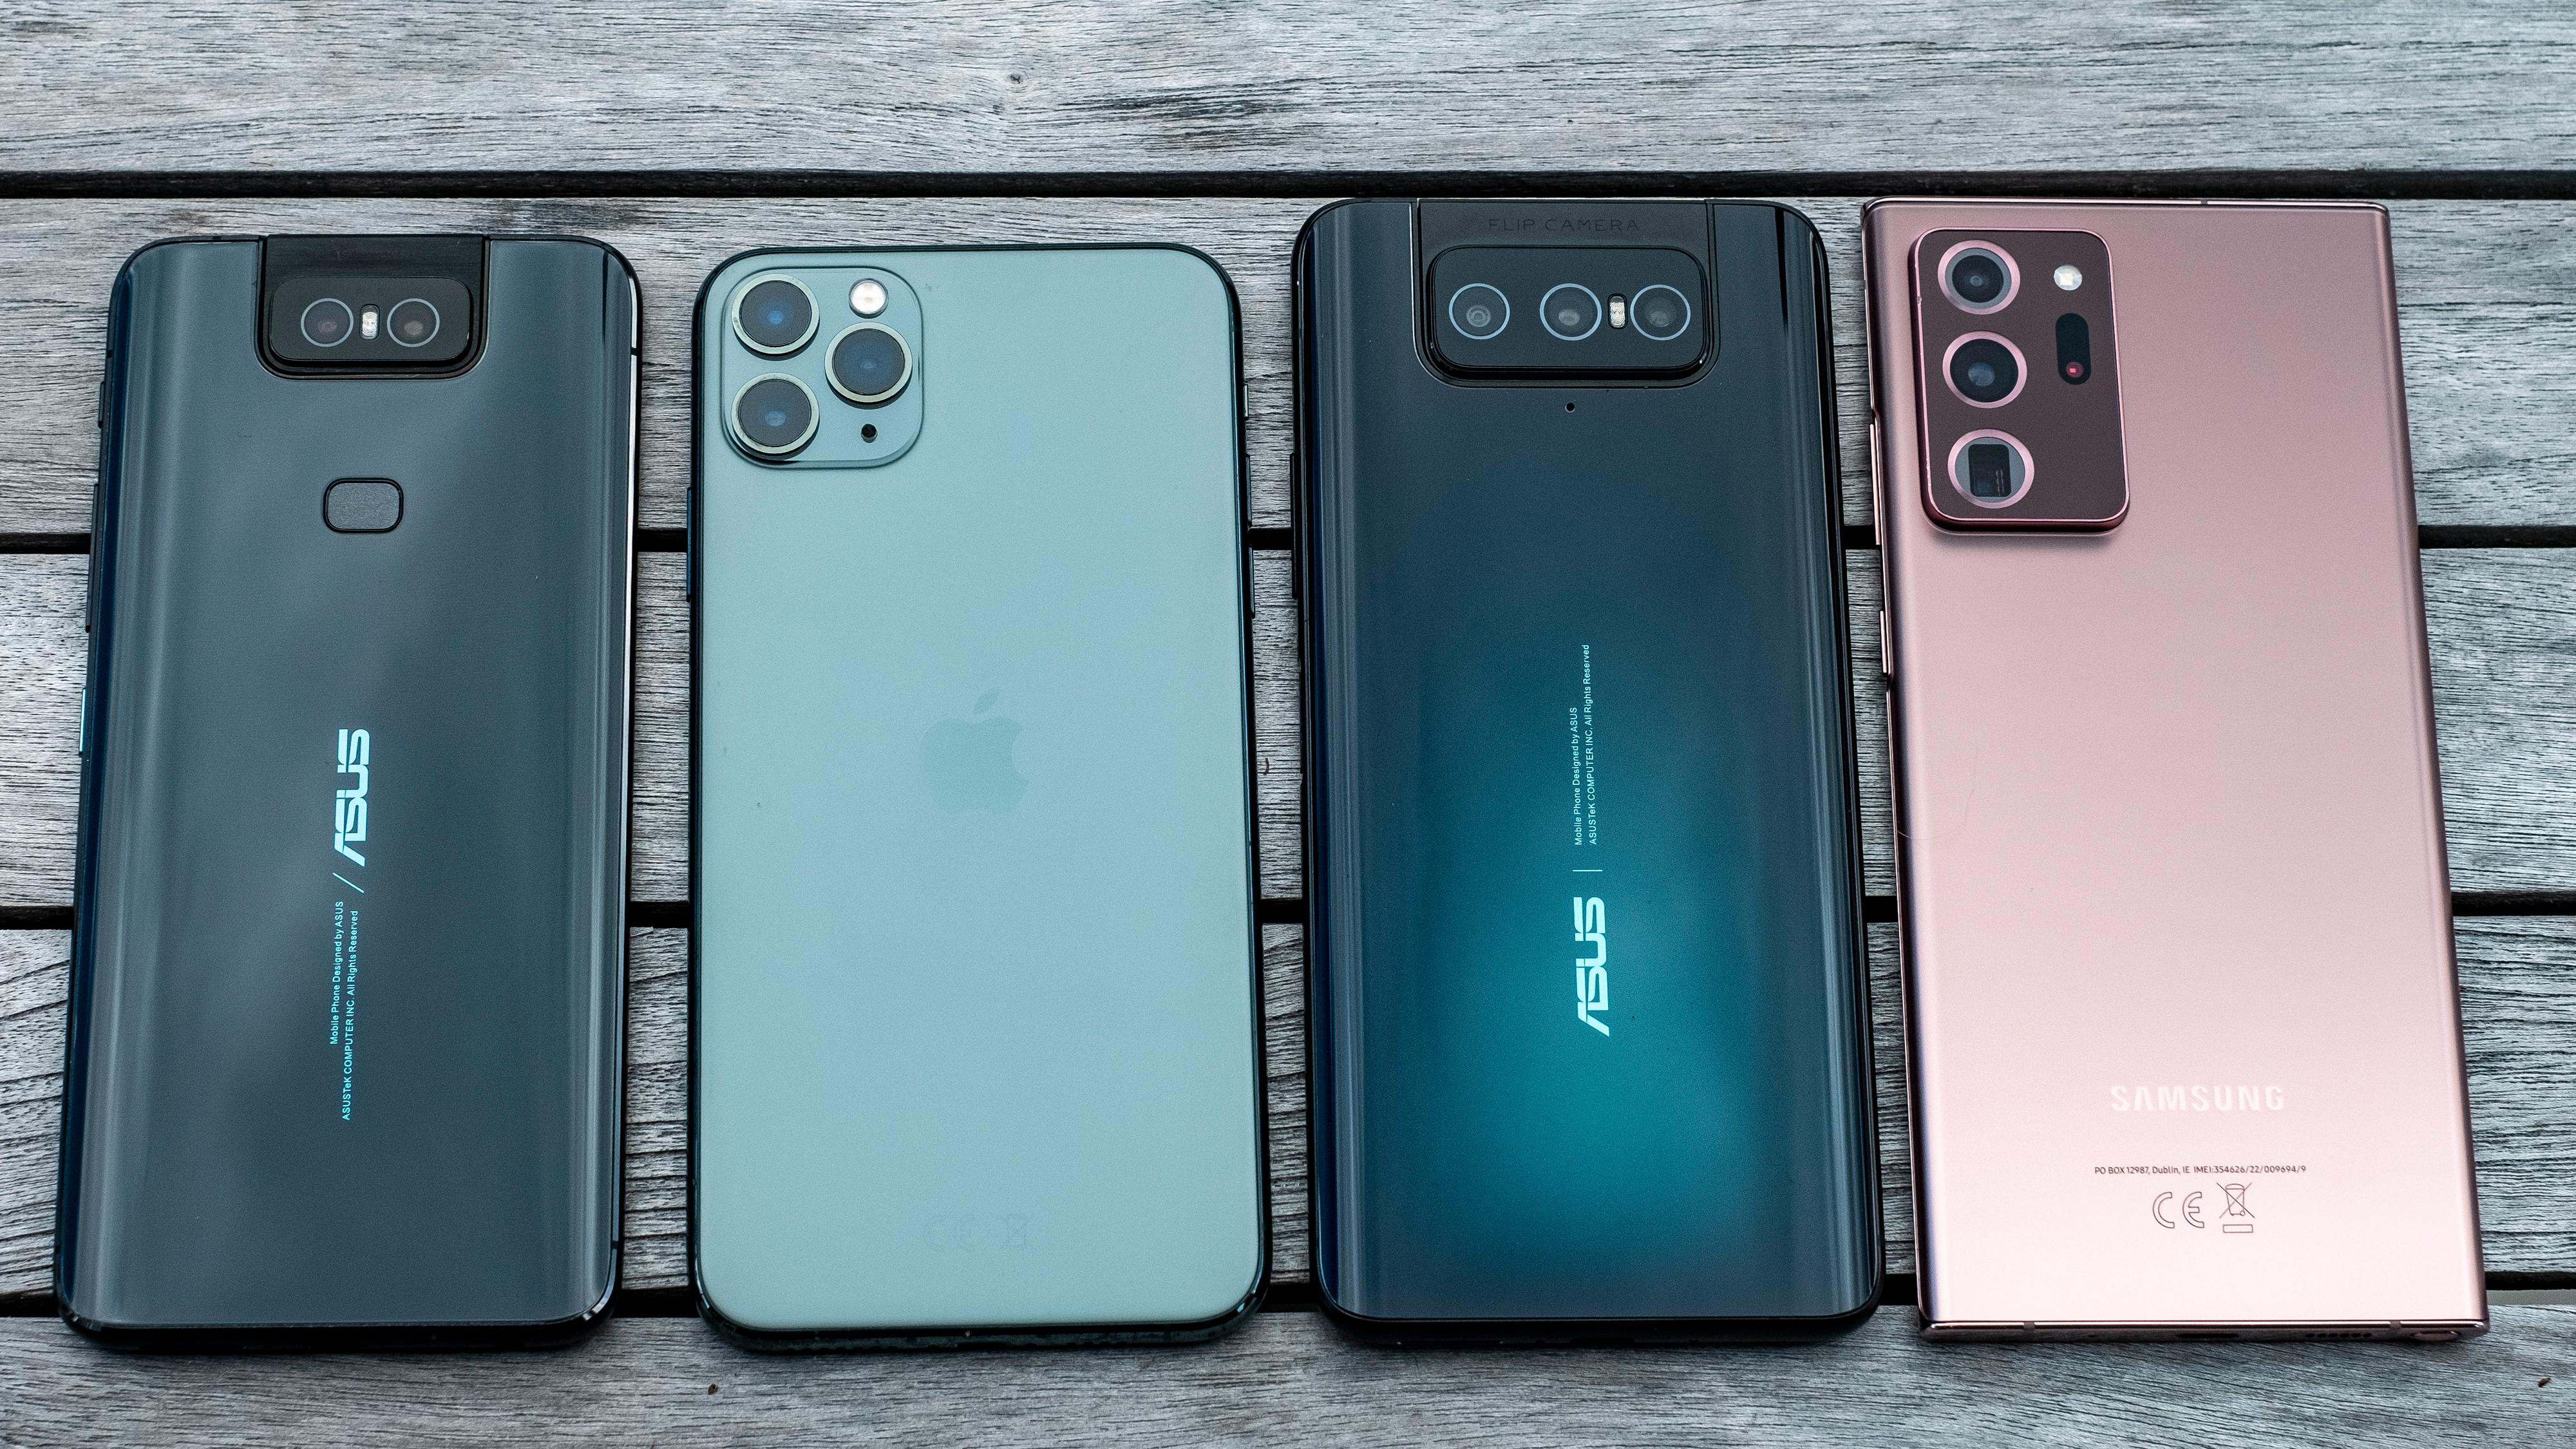 Fra venstre: Asus Zenfone 6, Apple iPhone 11 Pro Max, Asus Zenfone 7 og Samsung Galaxy Note 20 Ultra. Asusen er på størrelse med de aller største mobilene på markedet.